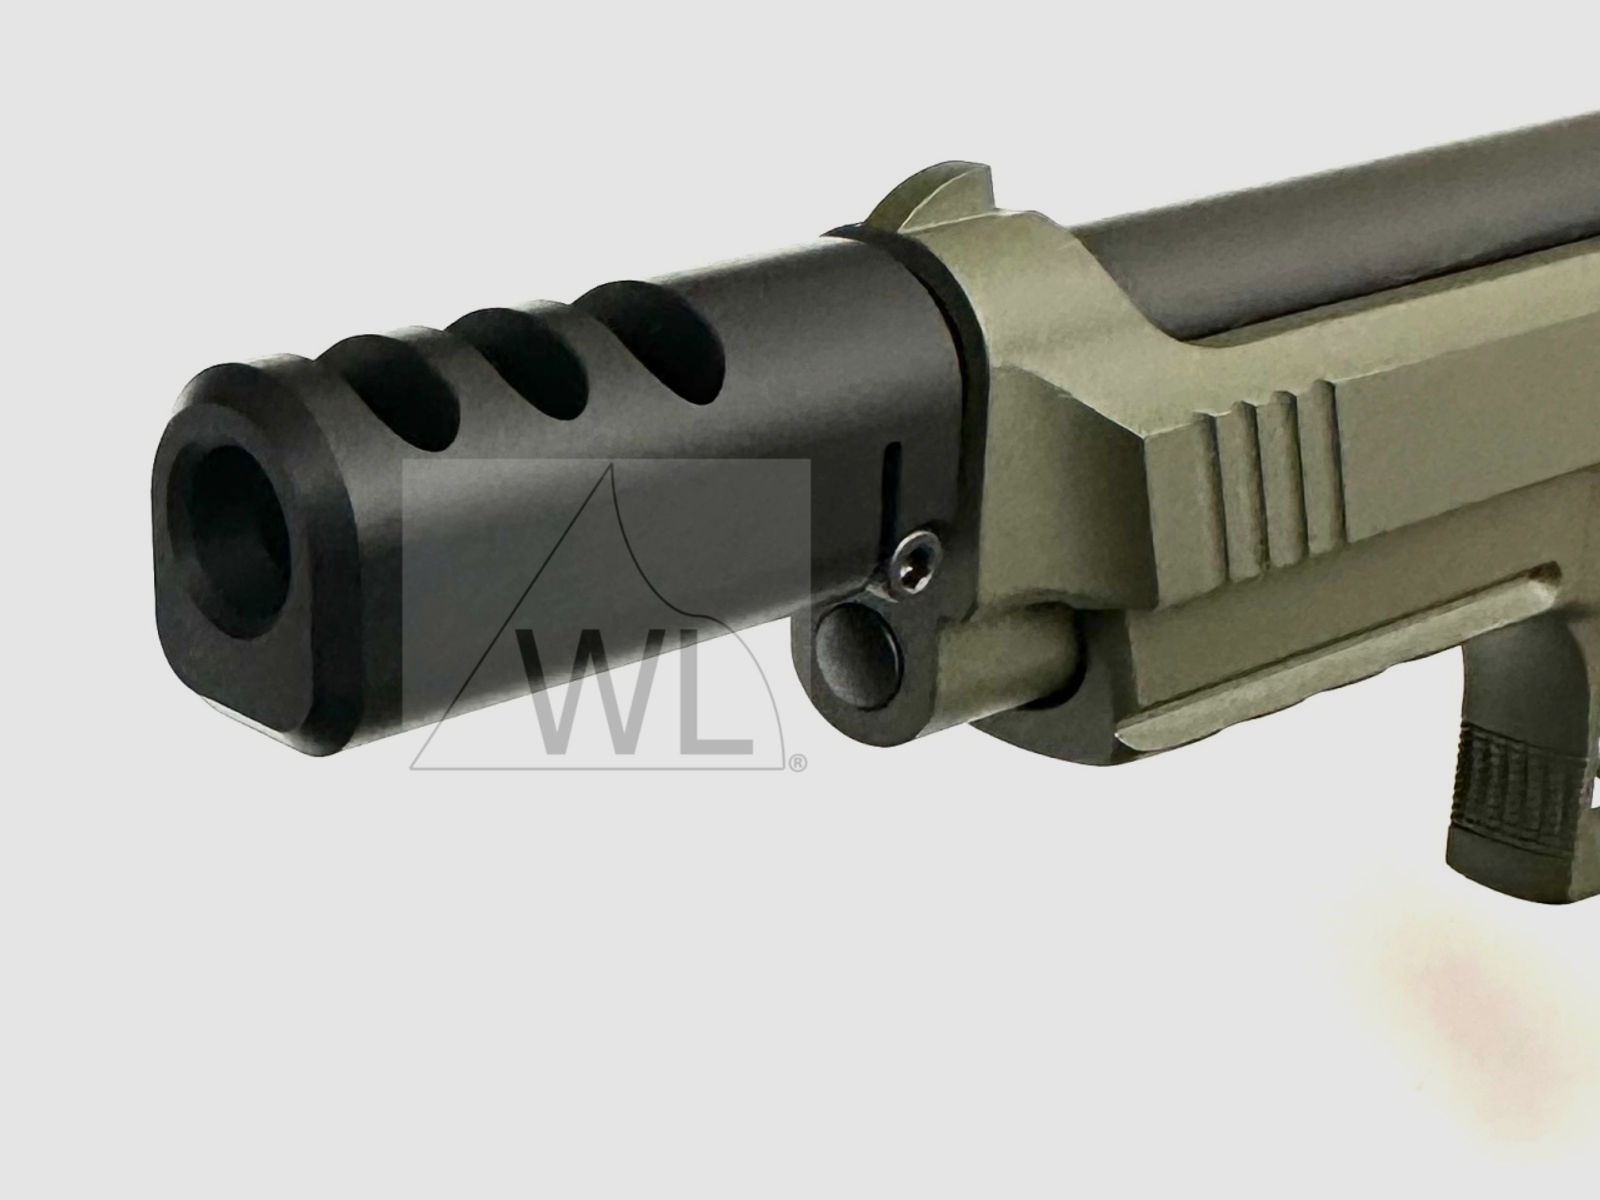 WL-92-Kompensator f. Pistolen 9mm Luger 1/2"-28 UNEF